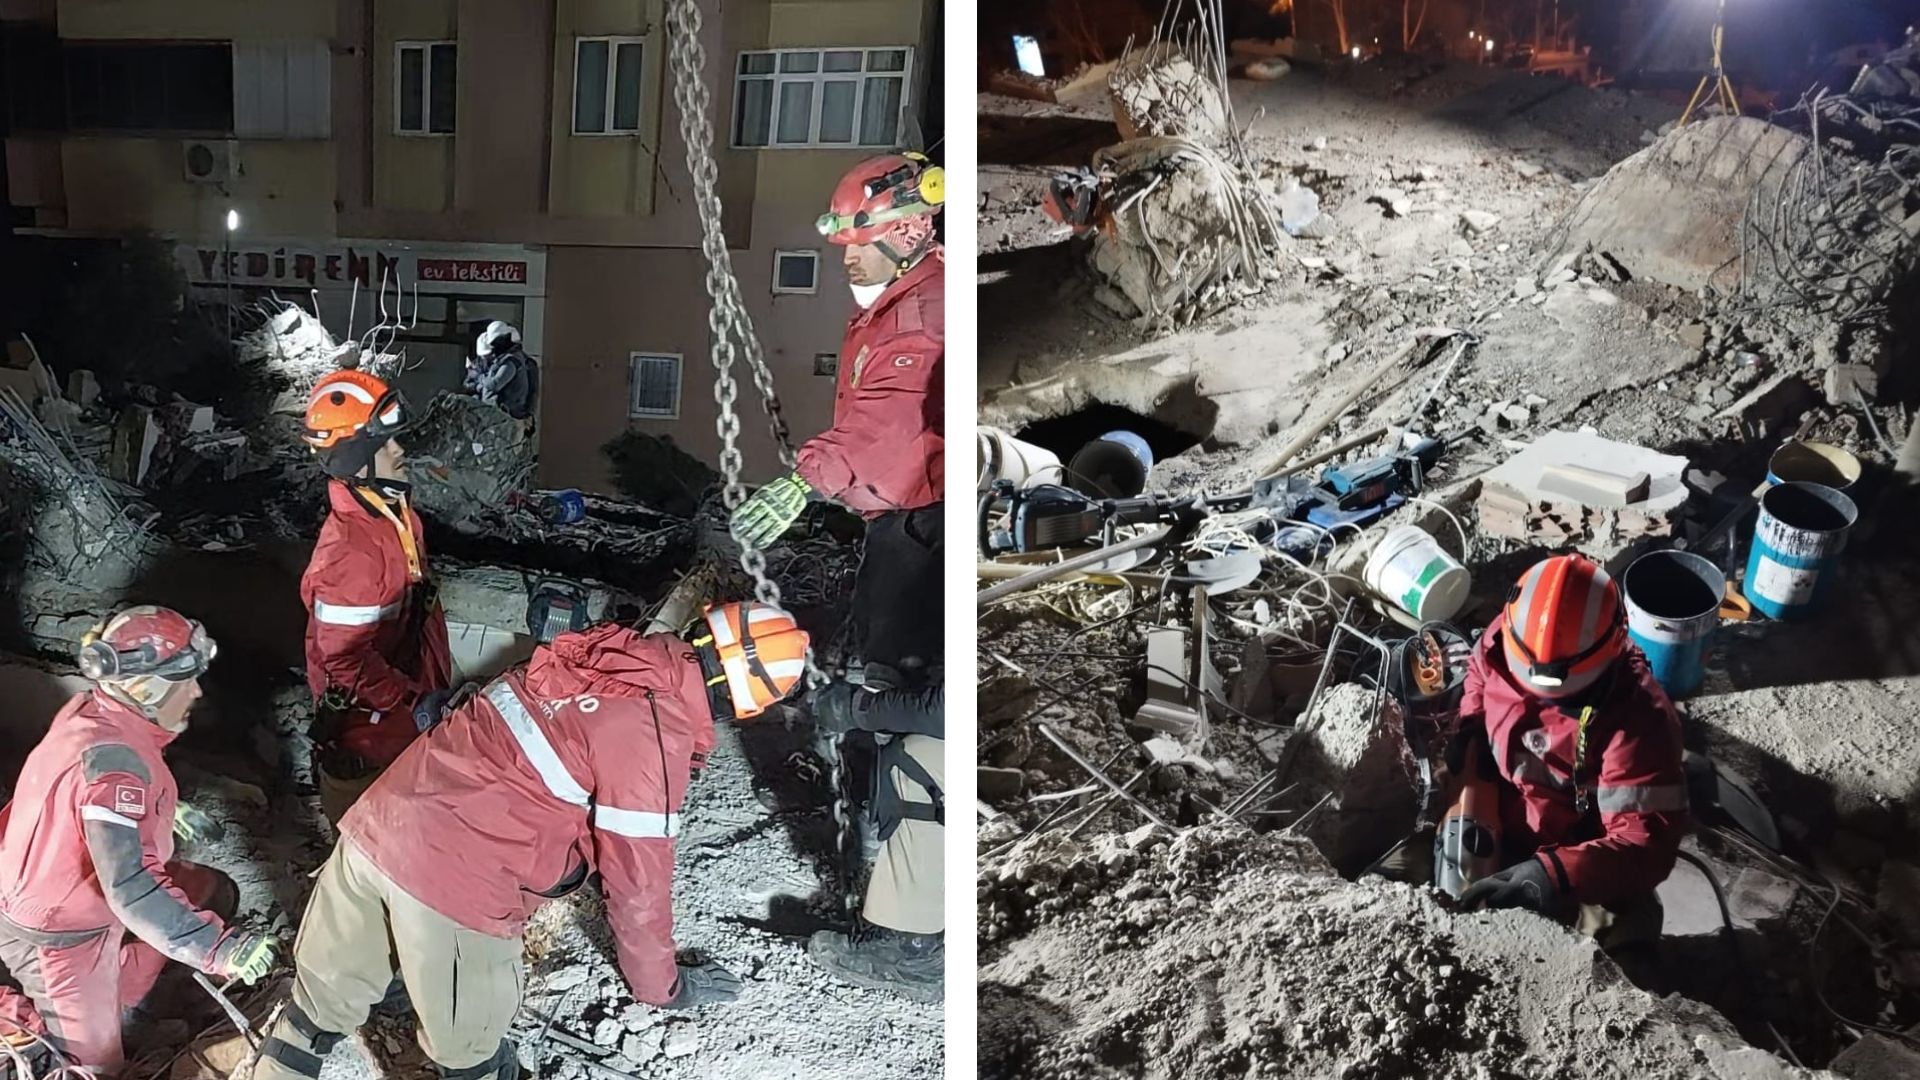 ES envia bombeiros e cadela especialista em buscas para ajudar em resgate  na Turquia, Espírito Santo